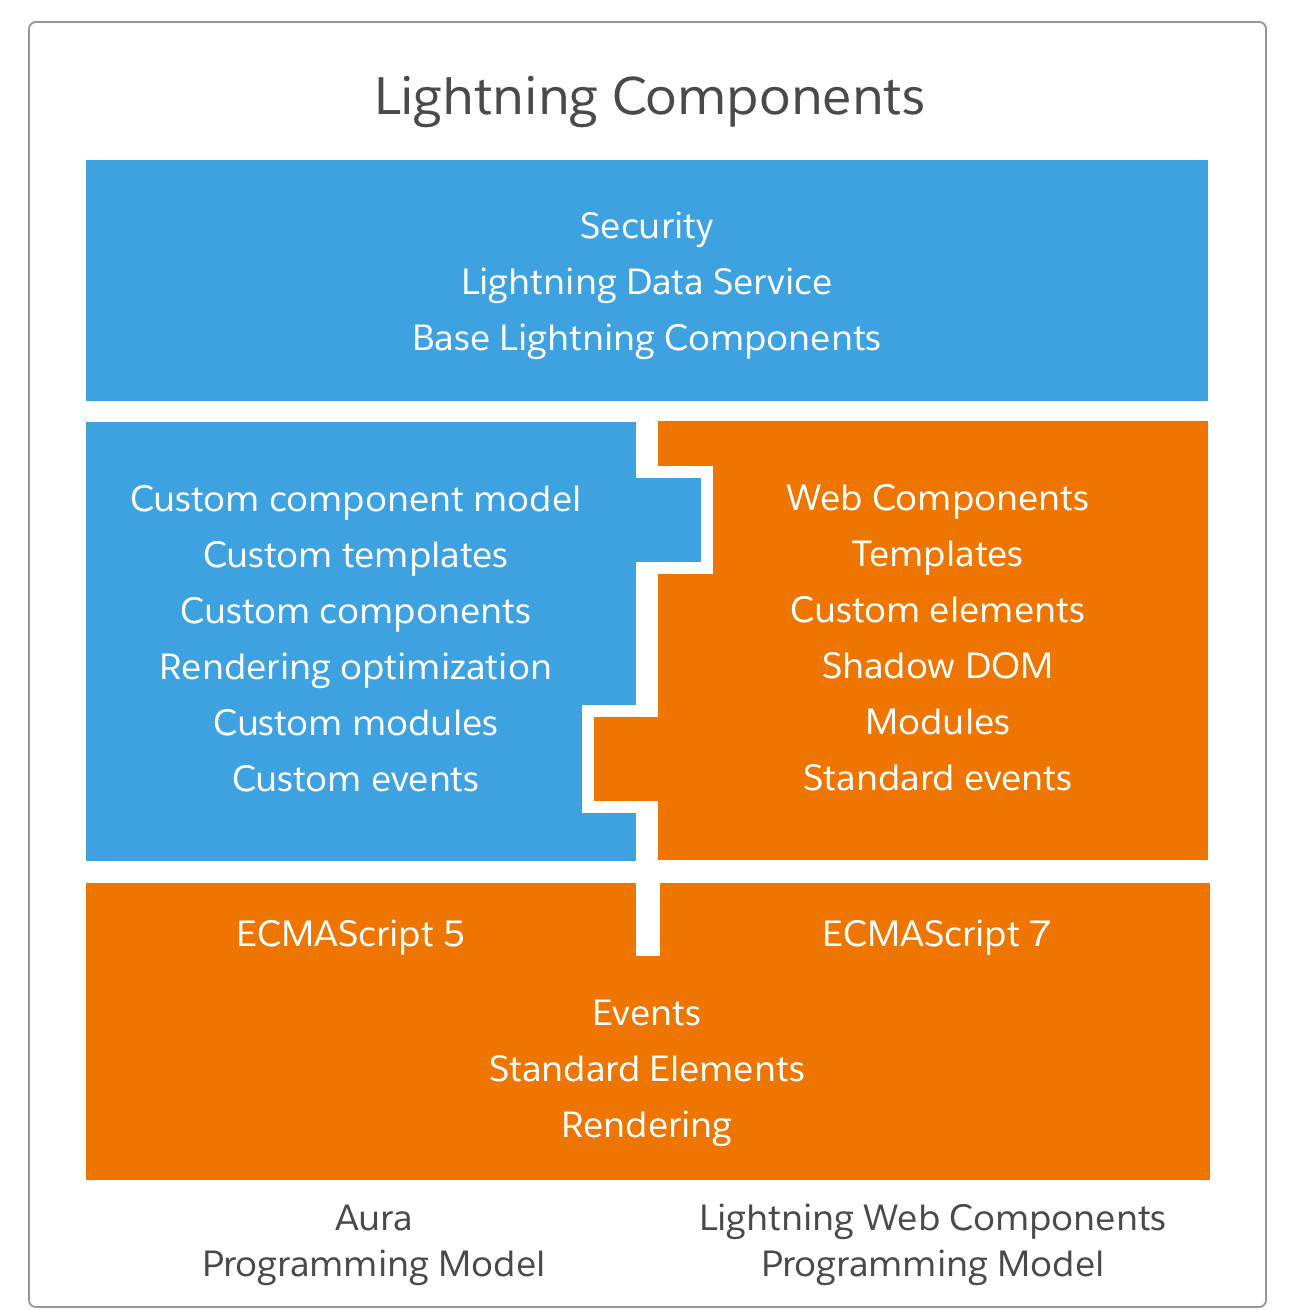 适用于Aura开发人员的Lightning Web Components – 了解闪电Web组件如何与Aura组件一起使用